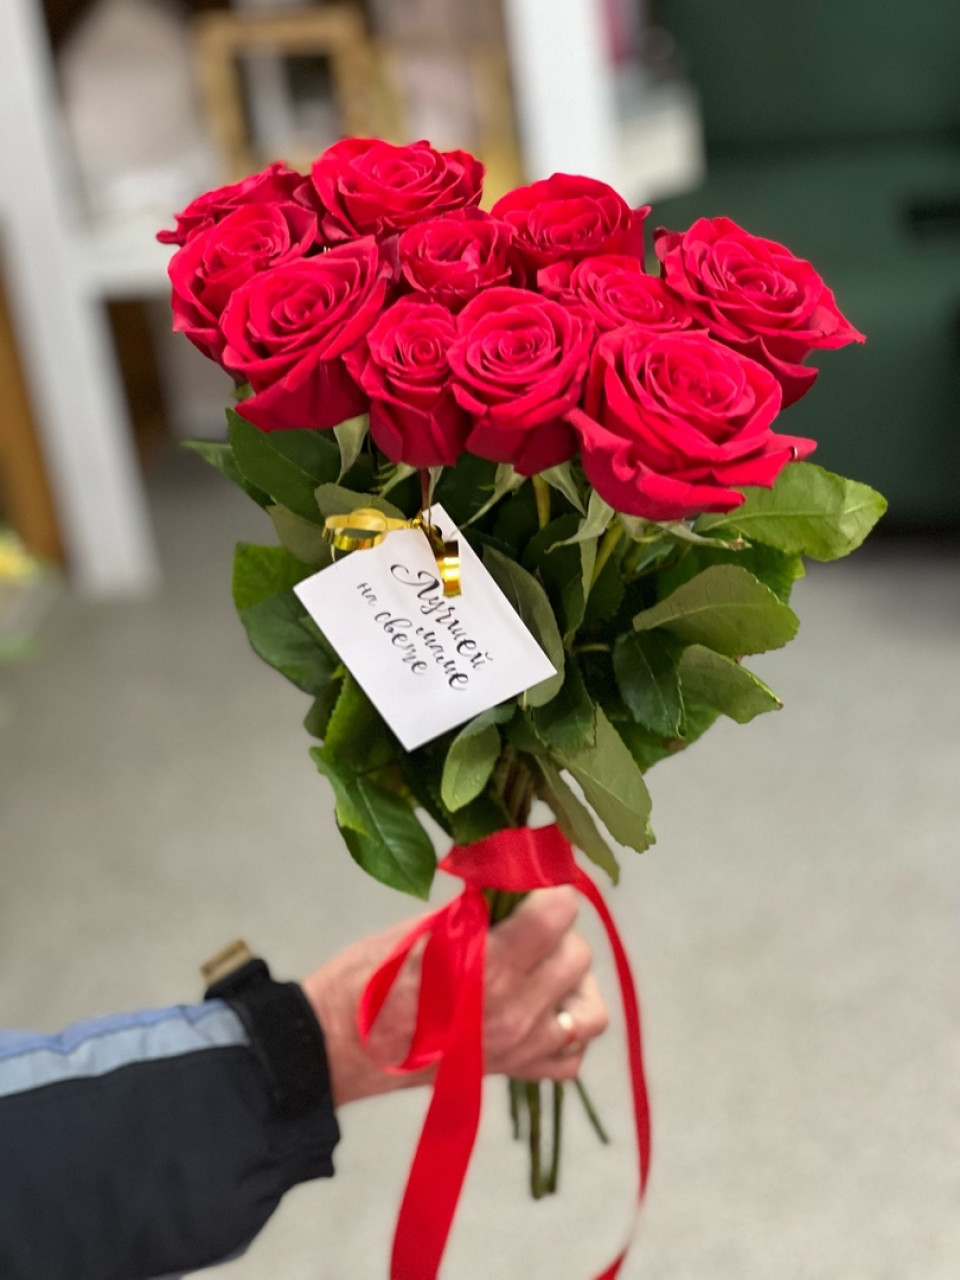 Букет 11 роз красных Фридом,Эквадор